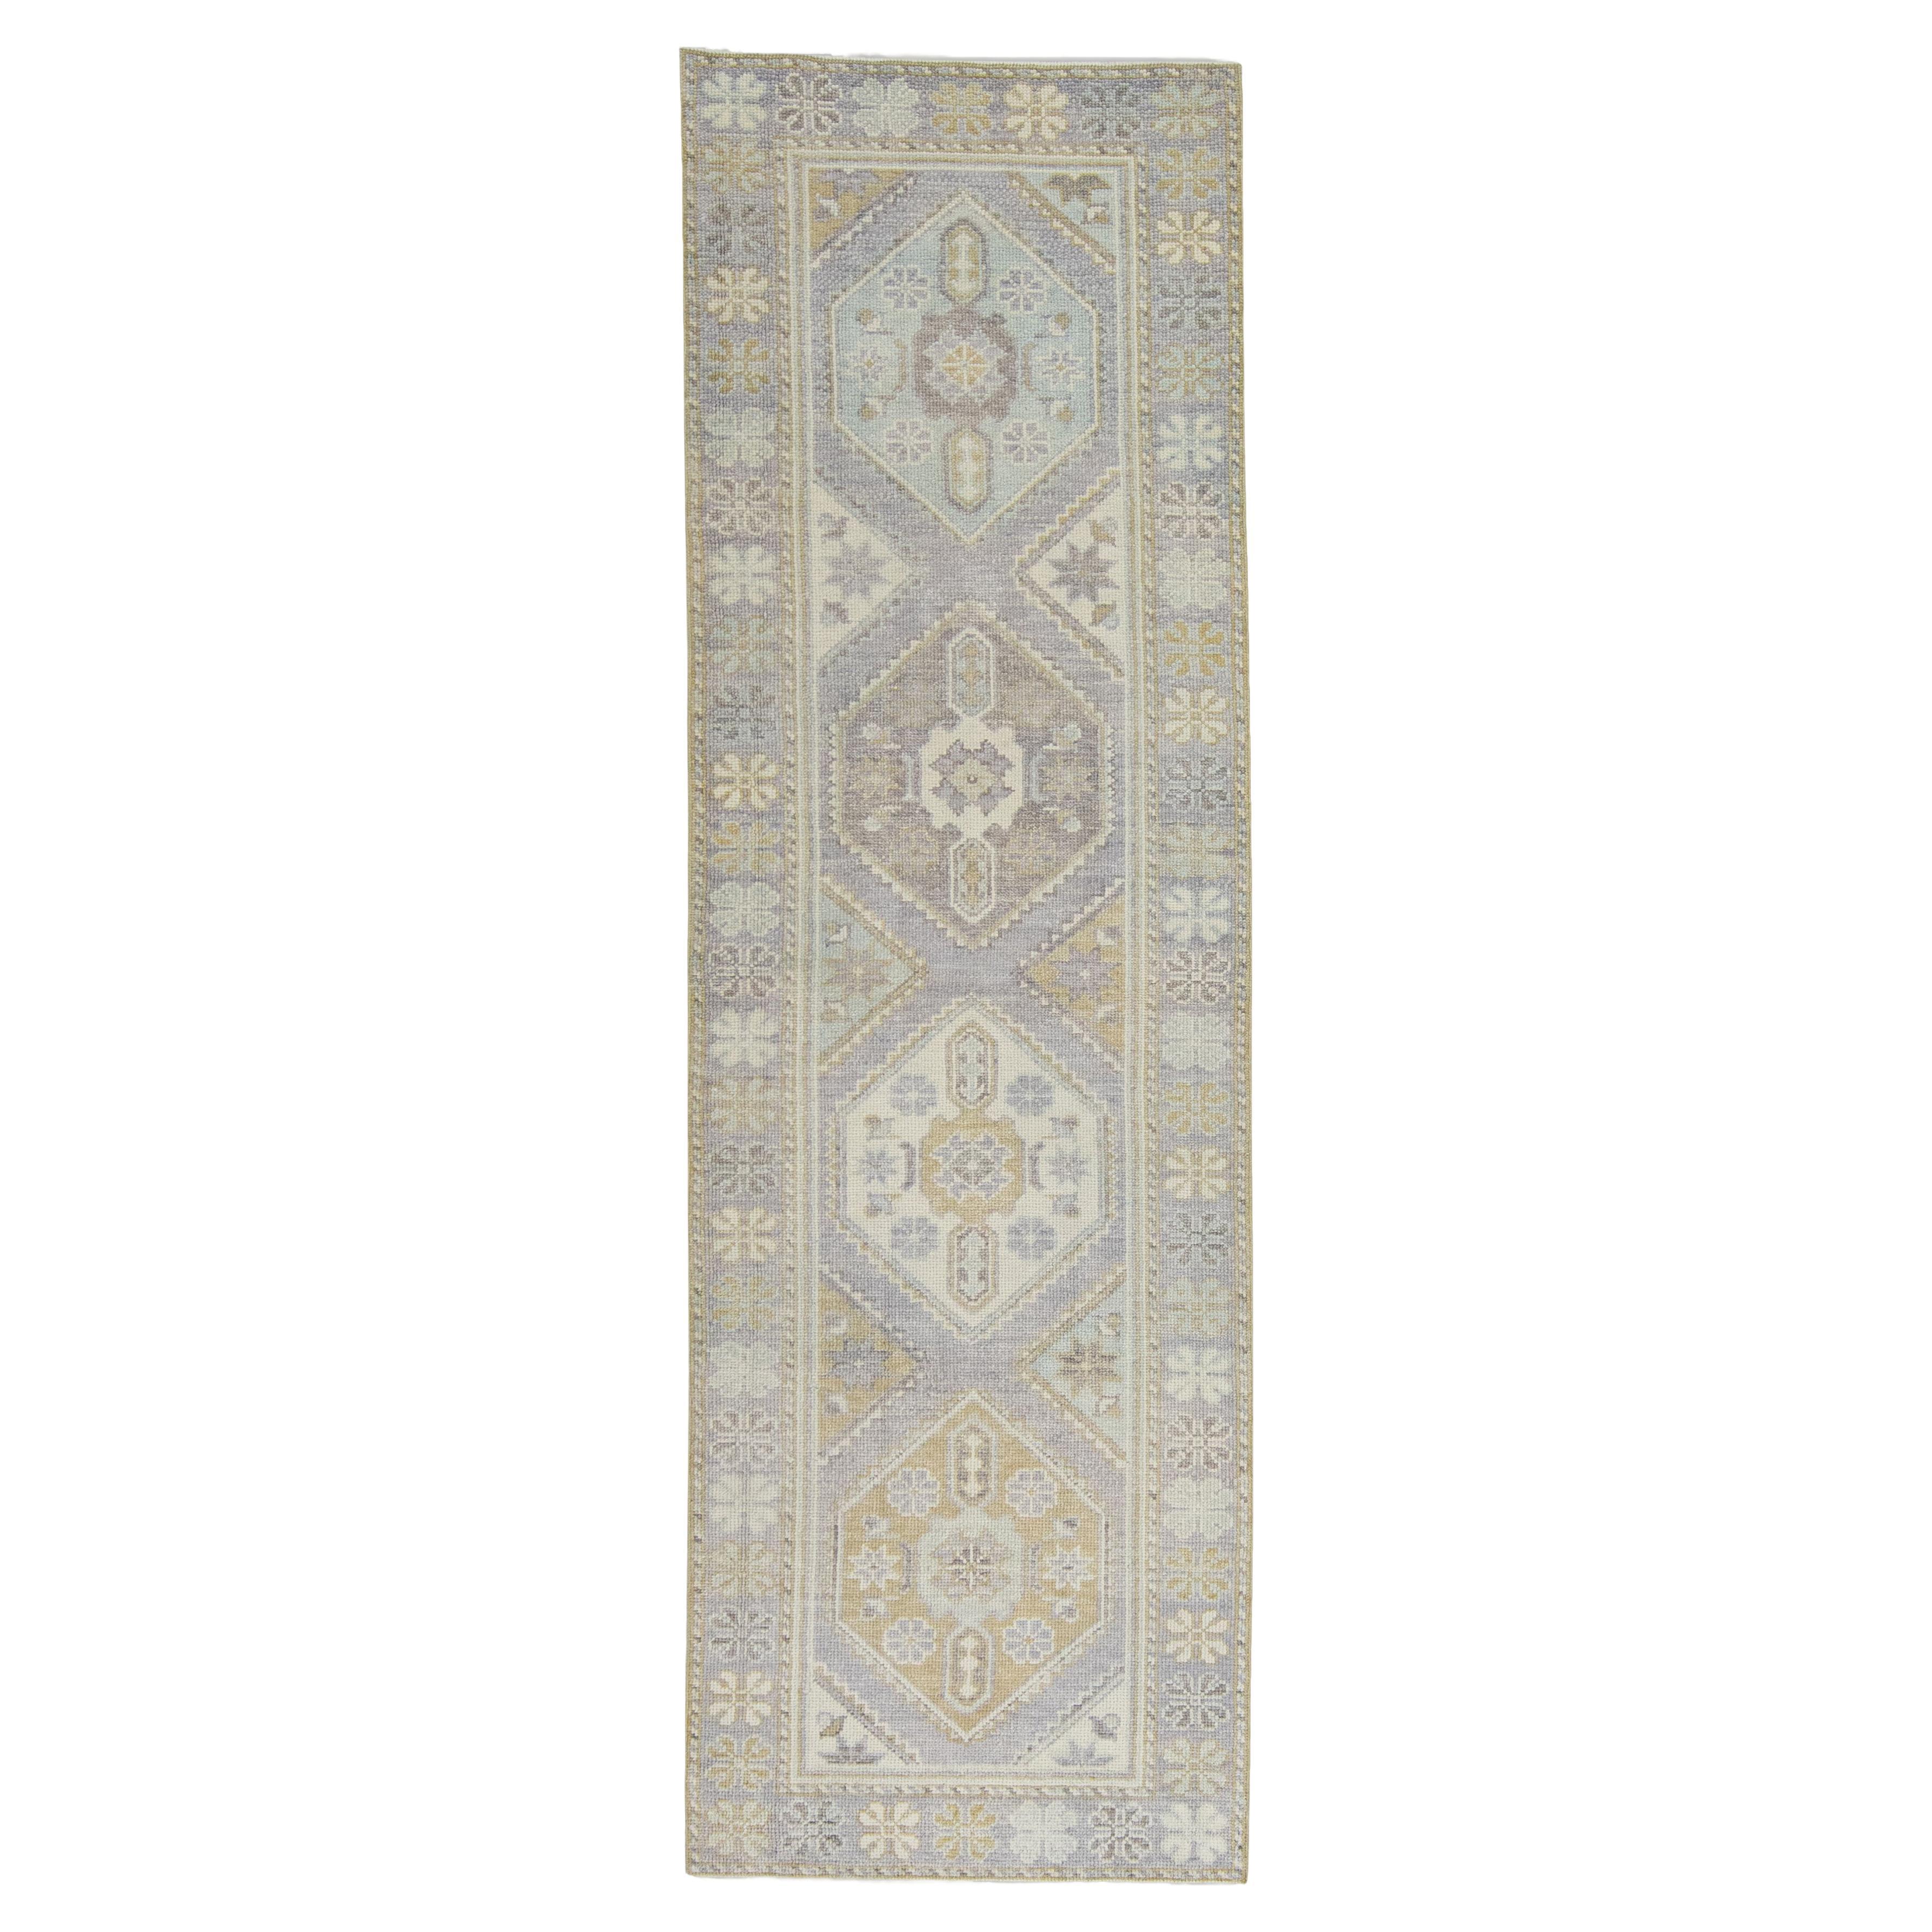 Handgewebter türkischer Oushak-Teppich aus Wolle 2'9"x 9'10"